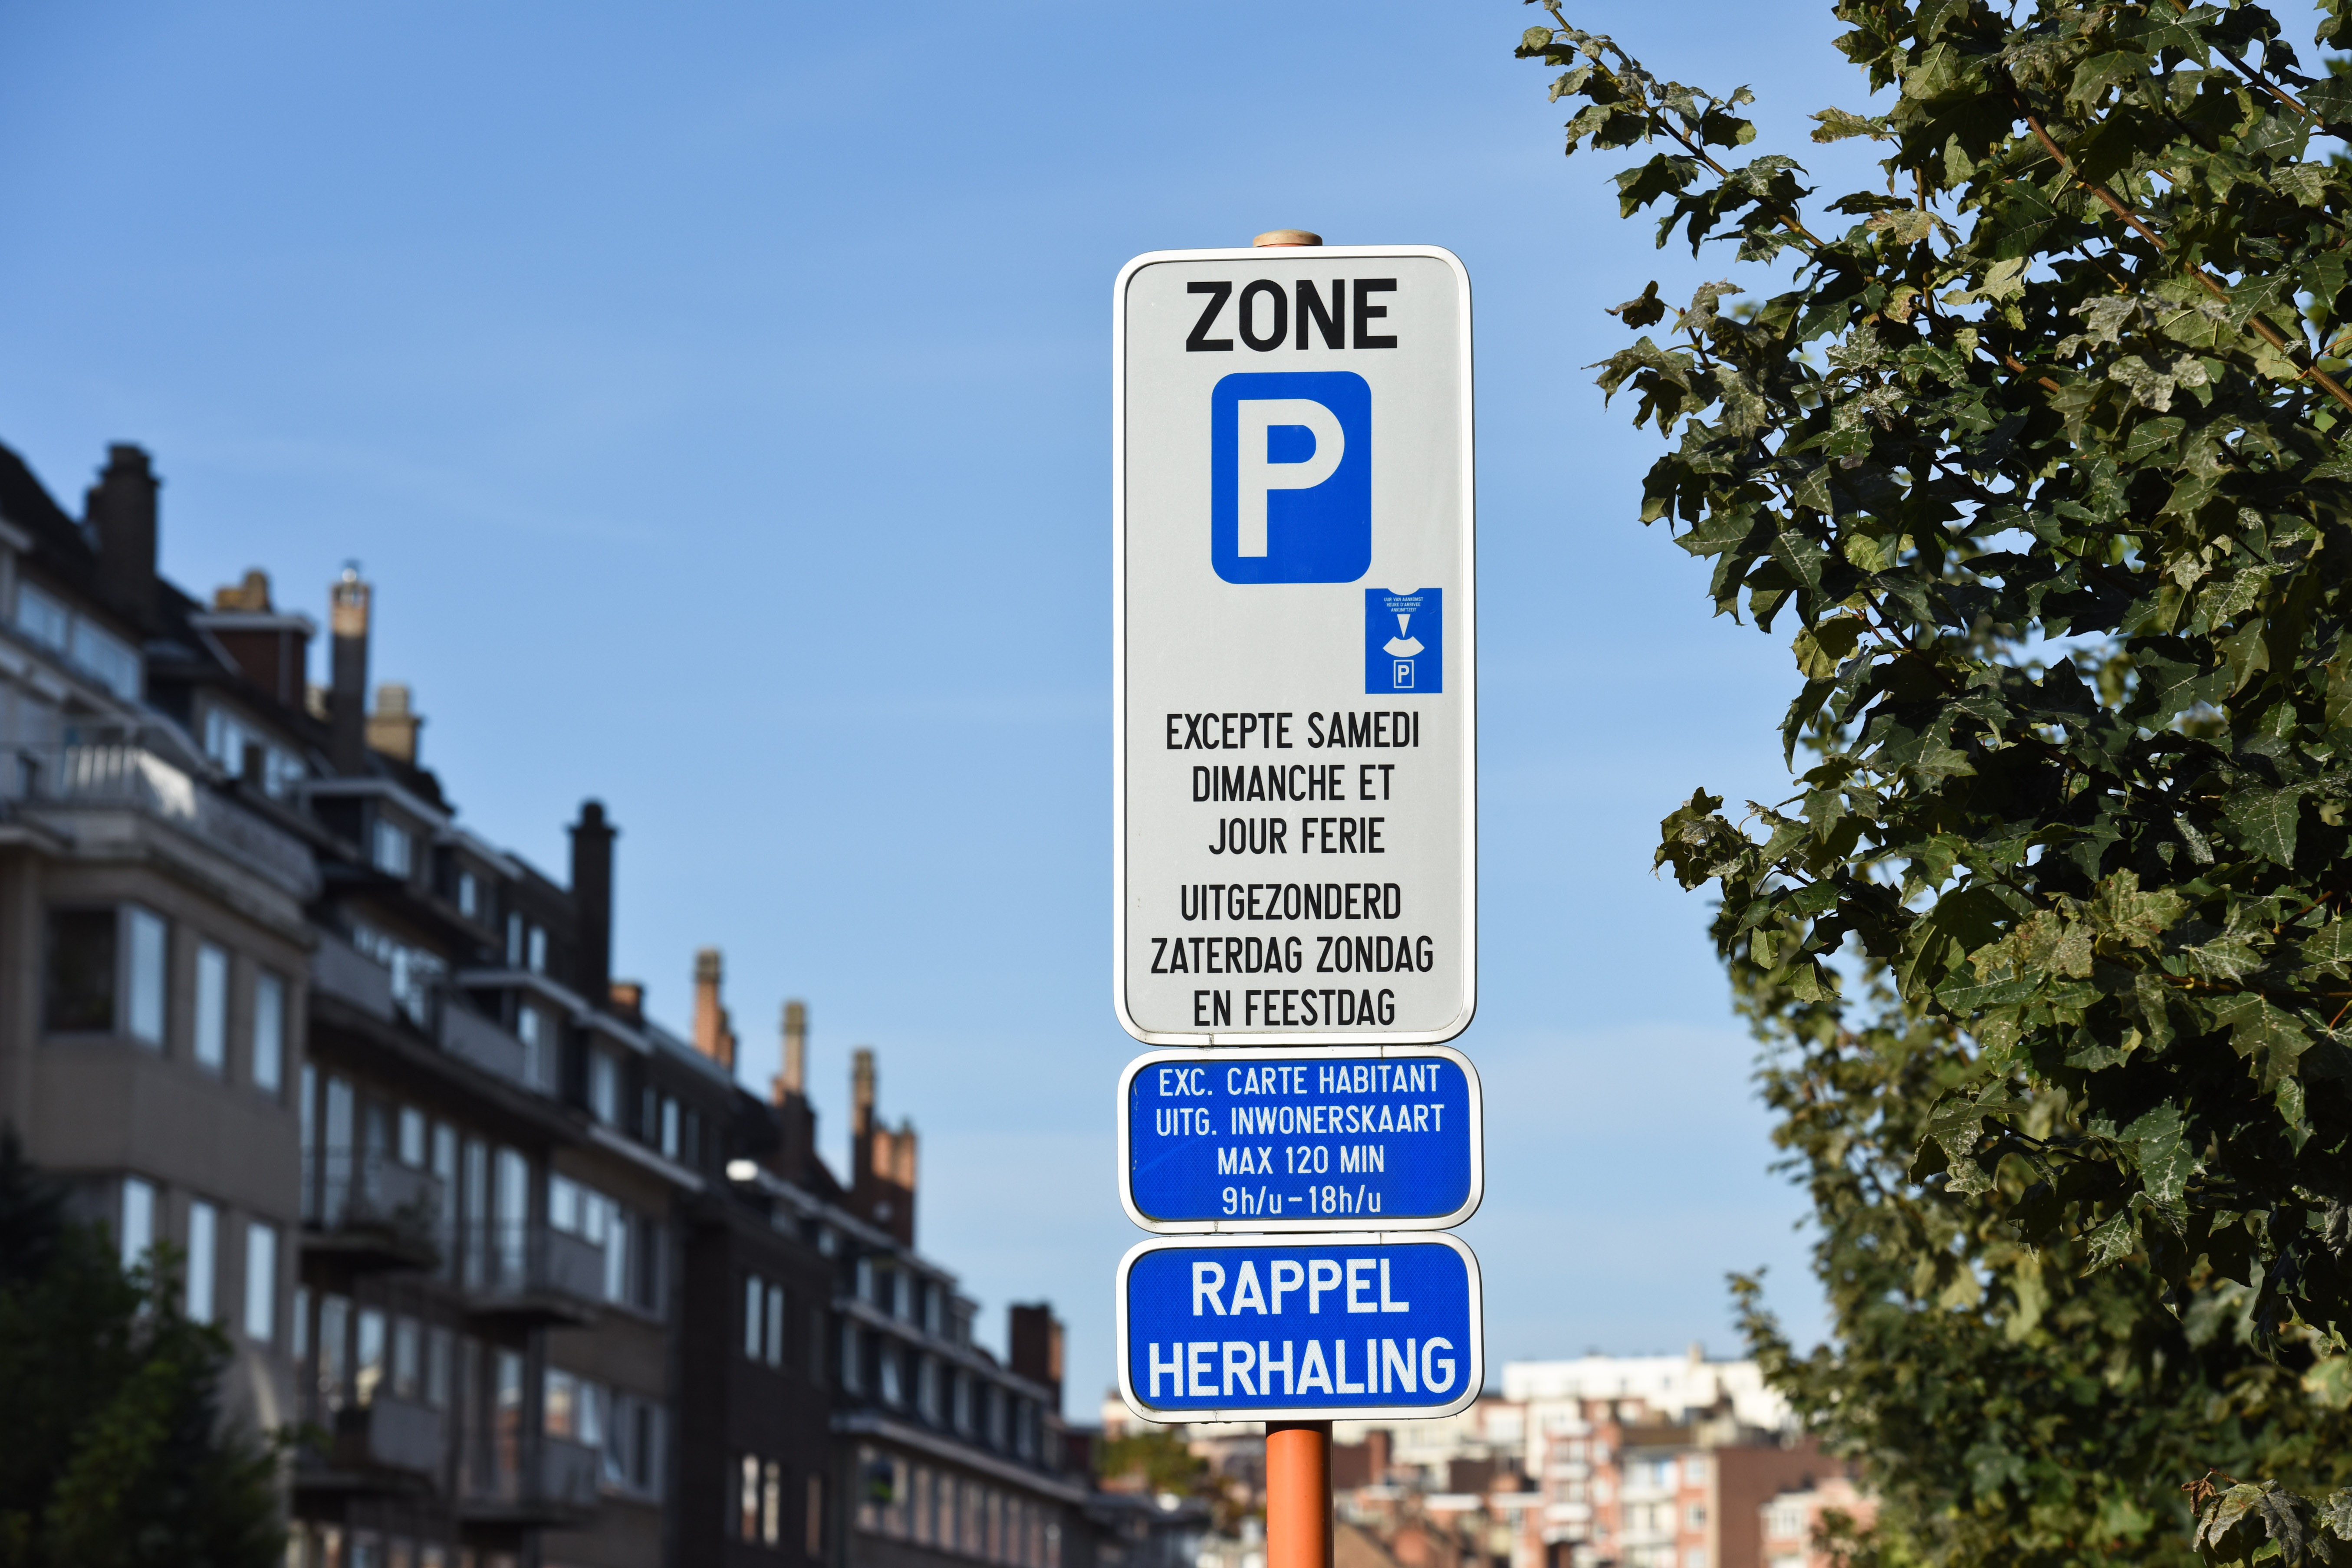 Disque vert : convention pour favoriser le parking de la voiture